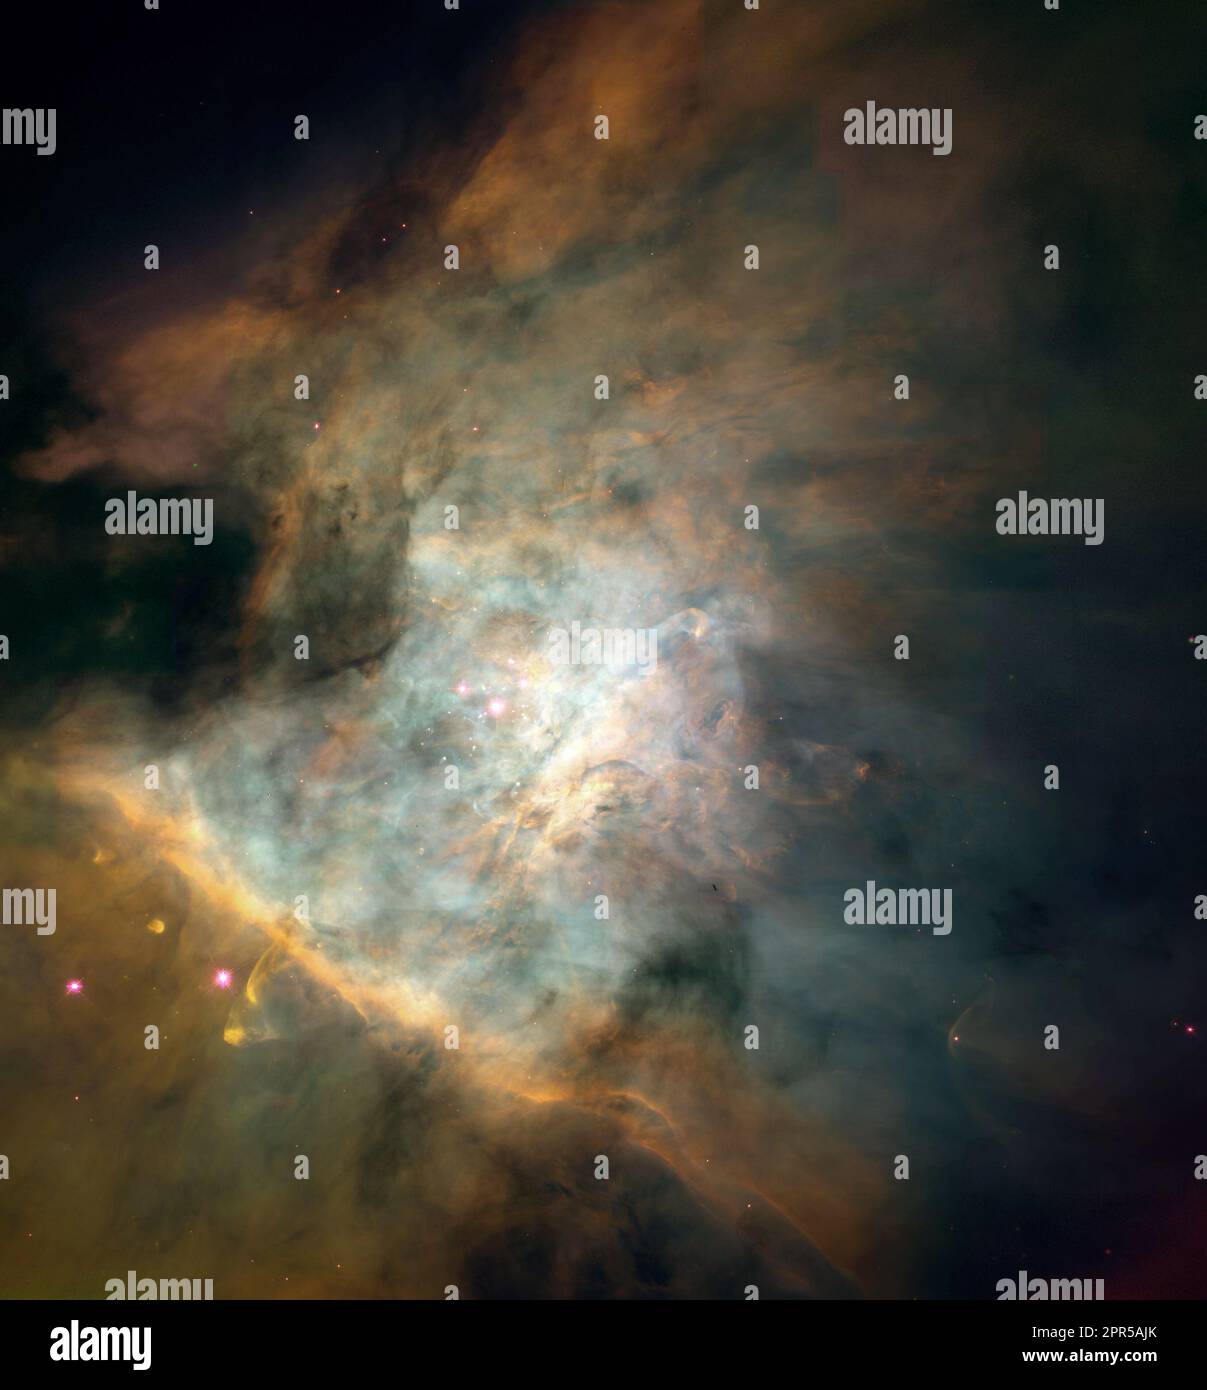 Questo spettacolare panorama a colori del centro la nebulosa Orion è una delle più grandi immagini mai raccolte da singole immagini scattate con il telescopio spaziale Hubble della NASA. Il quadro, perfettamente composto da un mosaico di 15 campi separati, copre un'area di cielo di circa il 5% dell'area coperta dalla Luna piena. L'arazzo, apparentemente infinito, di ricchi dettagli rivelato da Hubble mostra una turbolenta fabbrica di stelle ambientato all'interno di un maelstrom di gas luminescente e fluente. Anche se questa vista di 2.5 anni luce è ancora una piccola parte dell'intera nebulosa, comprende quasi tutta la luce Foto Stock